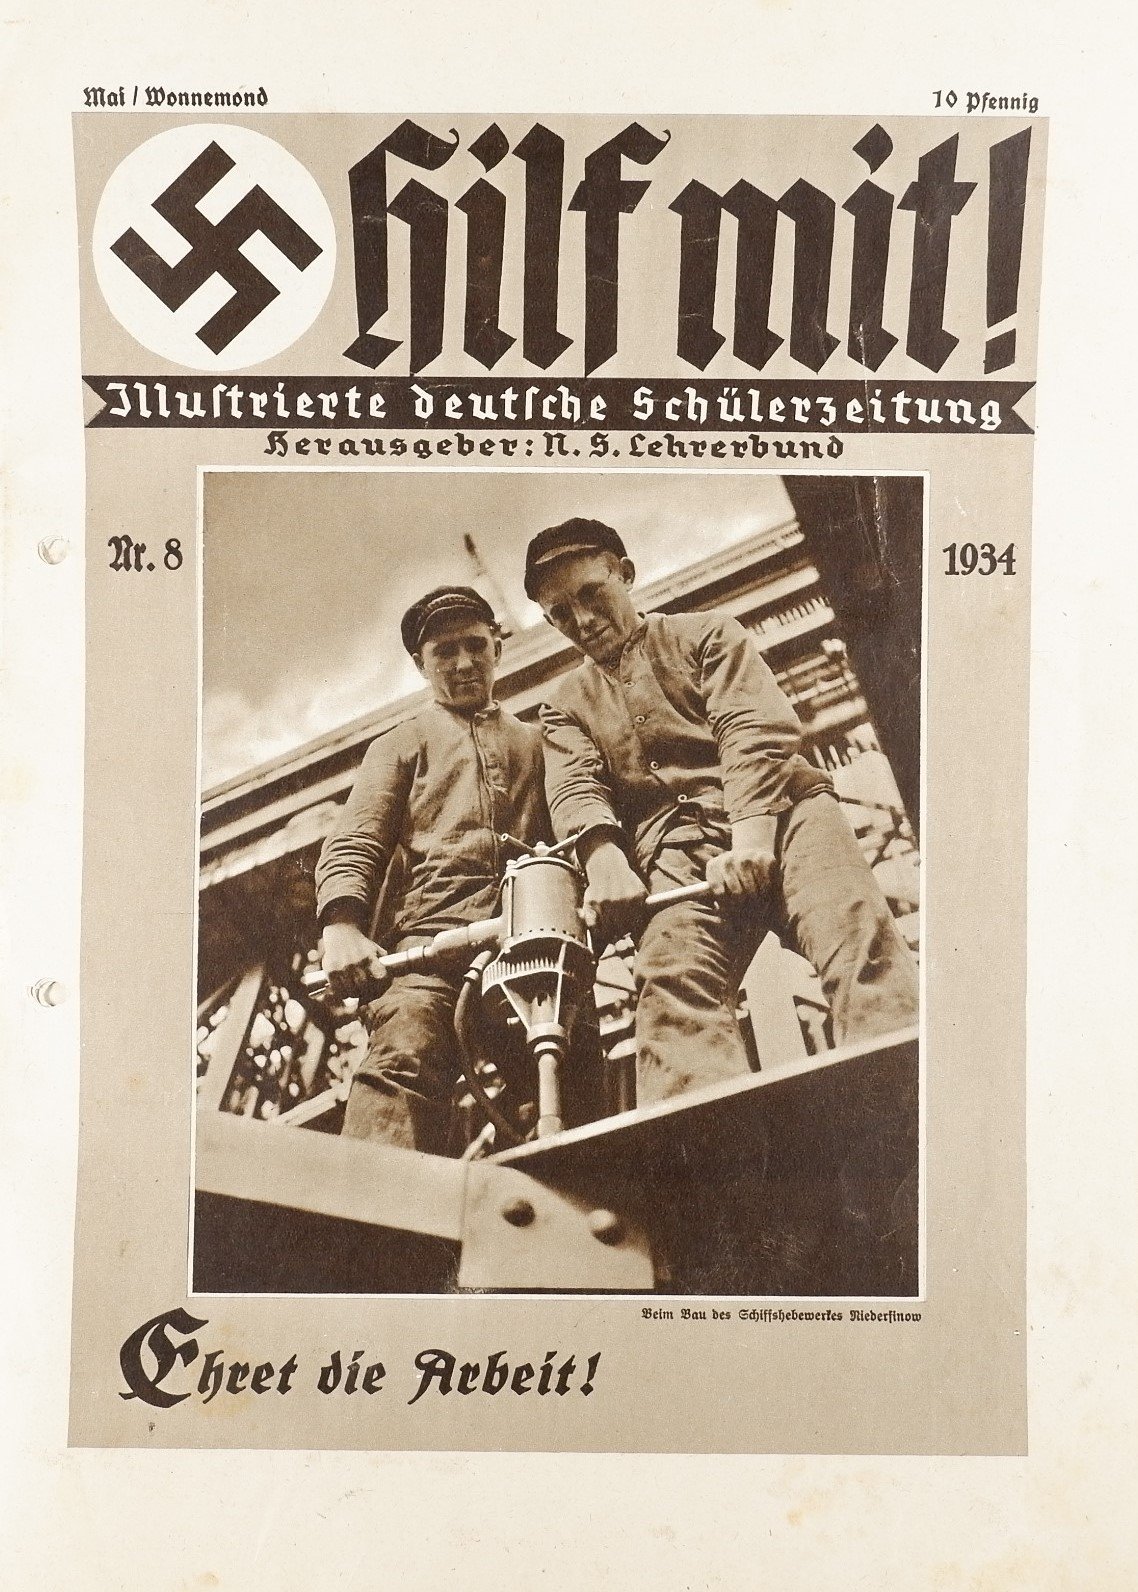 Hilf mit! - Illustrierte deutsche Schülerzeitung 8/1934 (Volkskunde- und Freilichtmuseum Roscheider Hof RR-F)